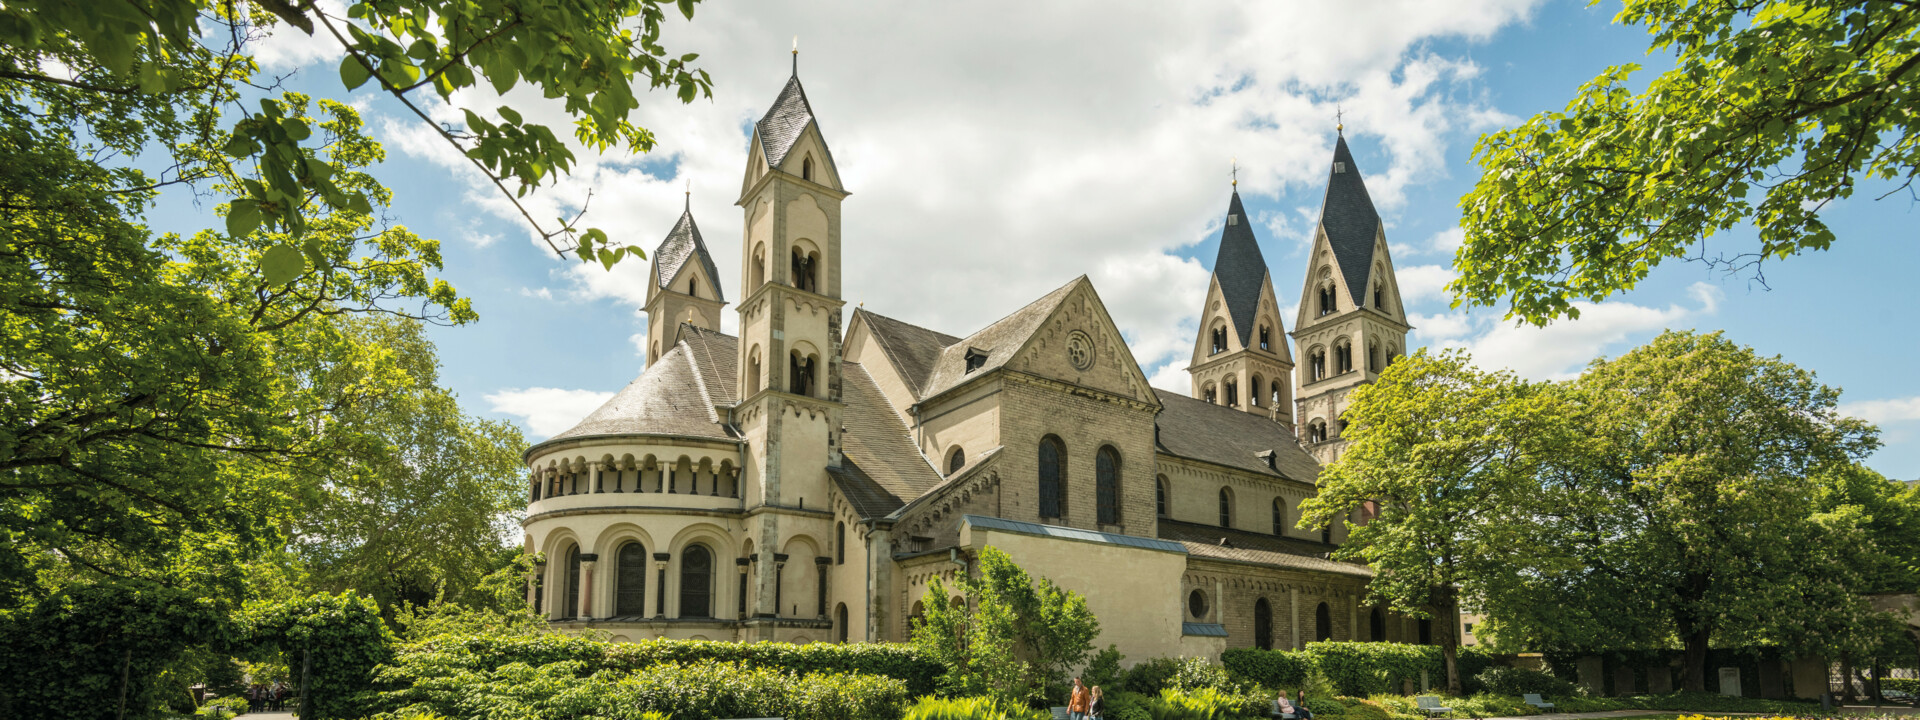 Ansicht von Basilika St. Kastor vom Blumenhof ©Koblenz-Touristik GmbH, Dominik Ketz